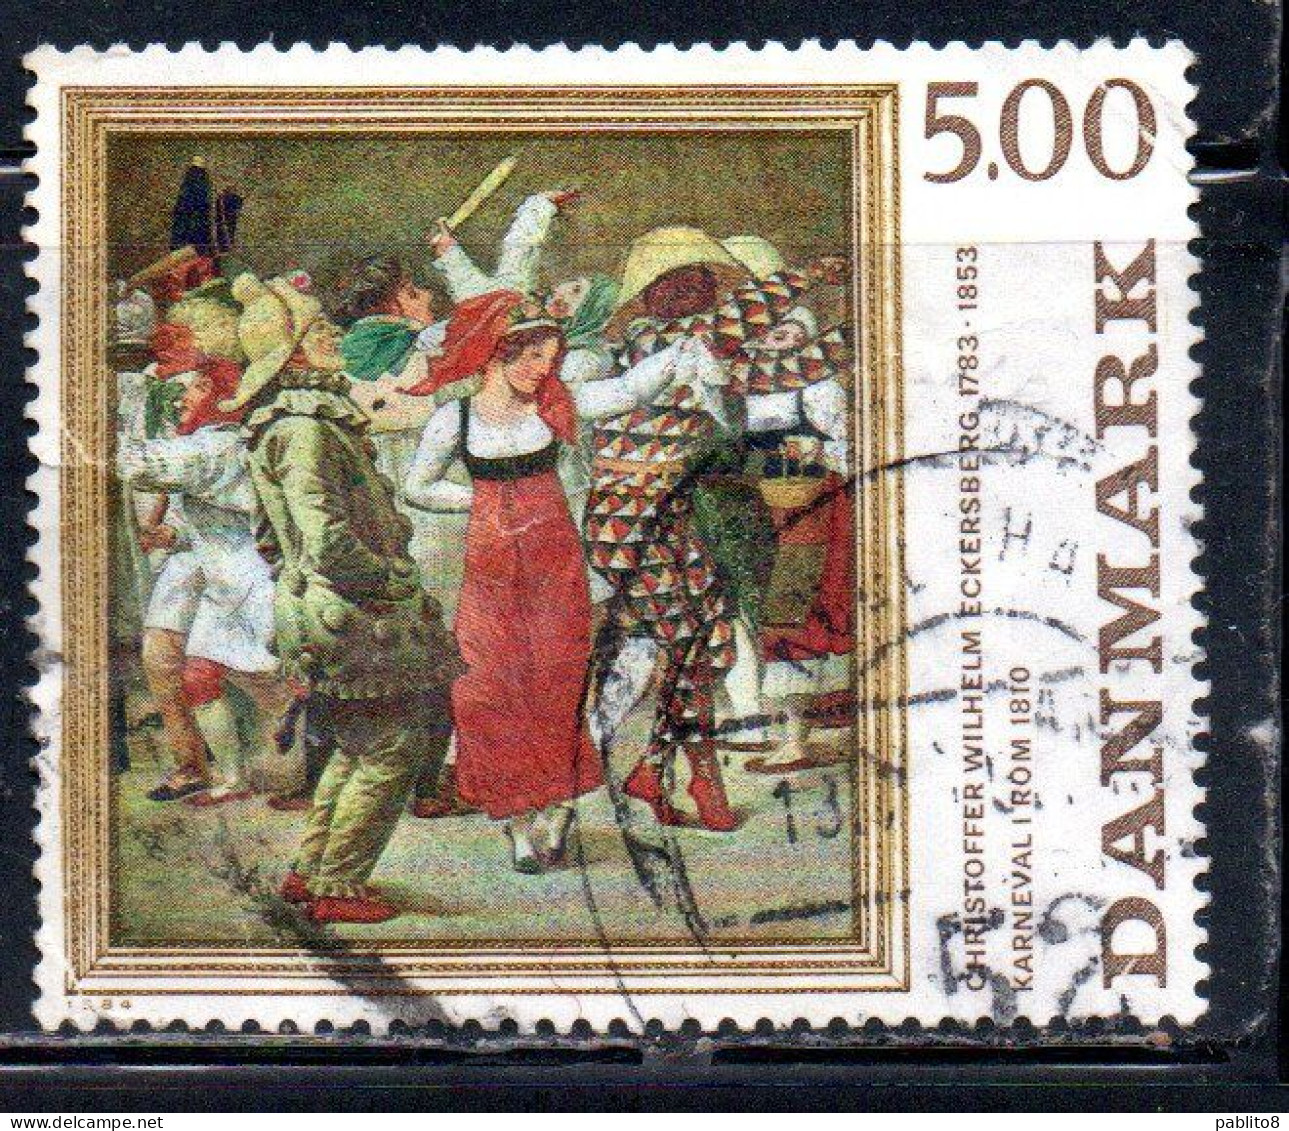 DANEMARK DANMARK DENMARK DANIMARCA 1985 PAINTINGS CARNIVAL IN ROME BY CHRISTOFFER W. ECKERSBER 5k USED USATO OBLITERE - Used Stamps